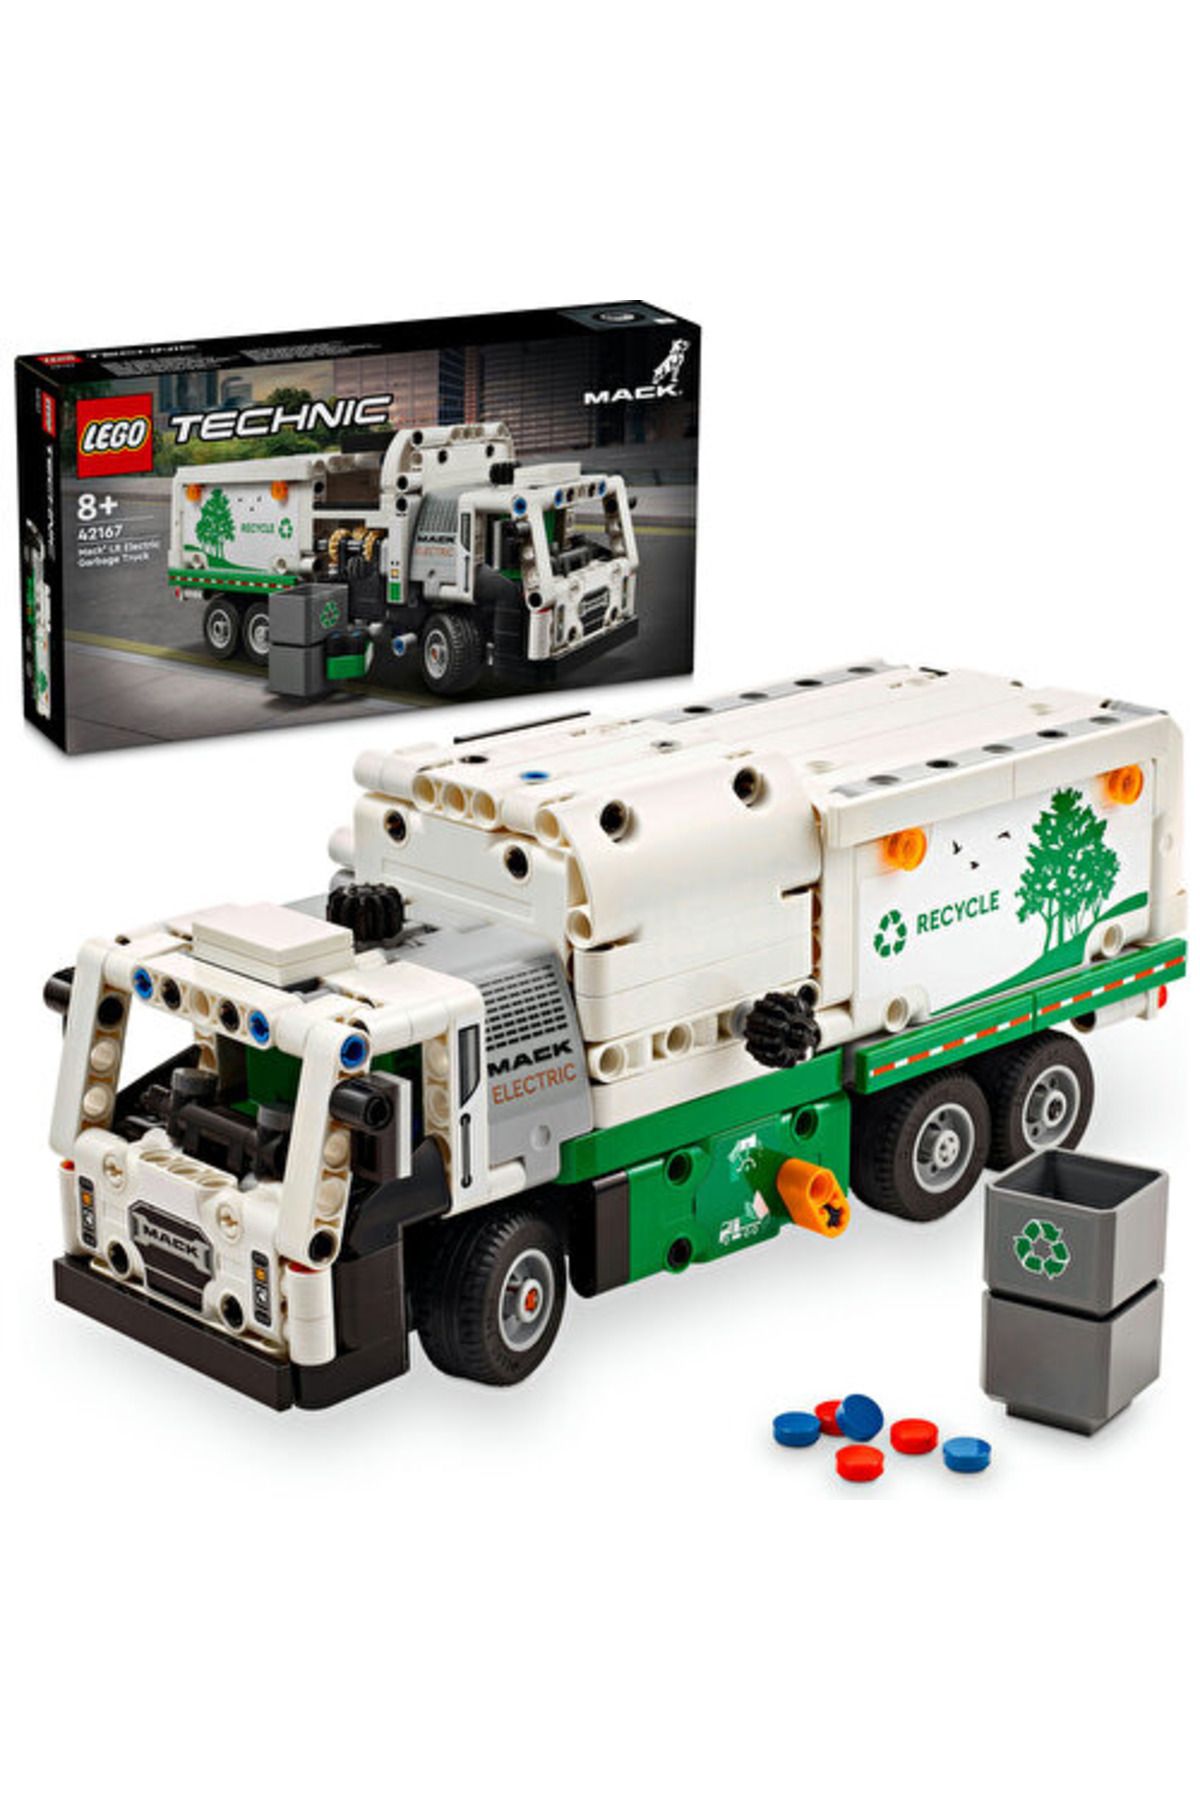 LEGO ® Technic Mack® LR Electric Çöp Kamyonu 42167  - 8 Yaş ve Üzeri İçin Yapım Seti (503 Parça)